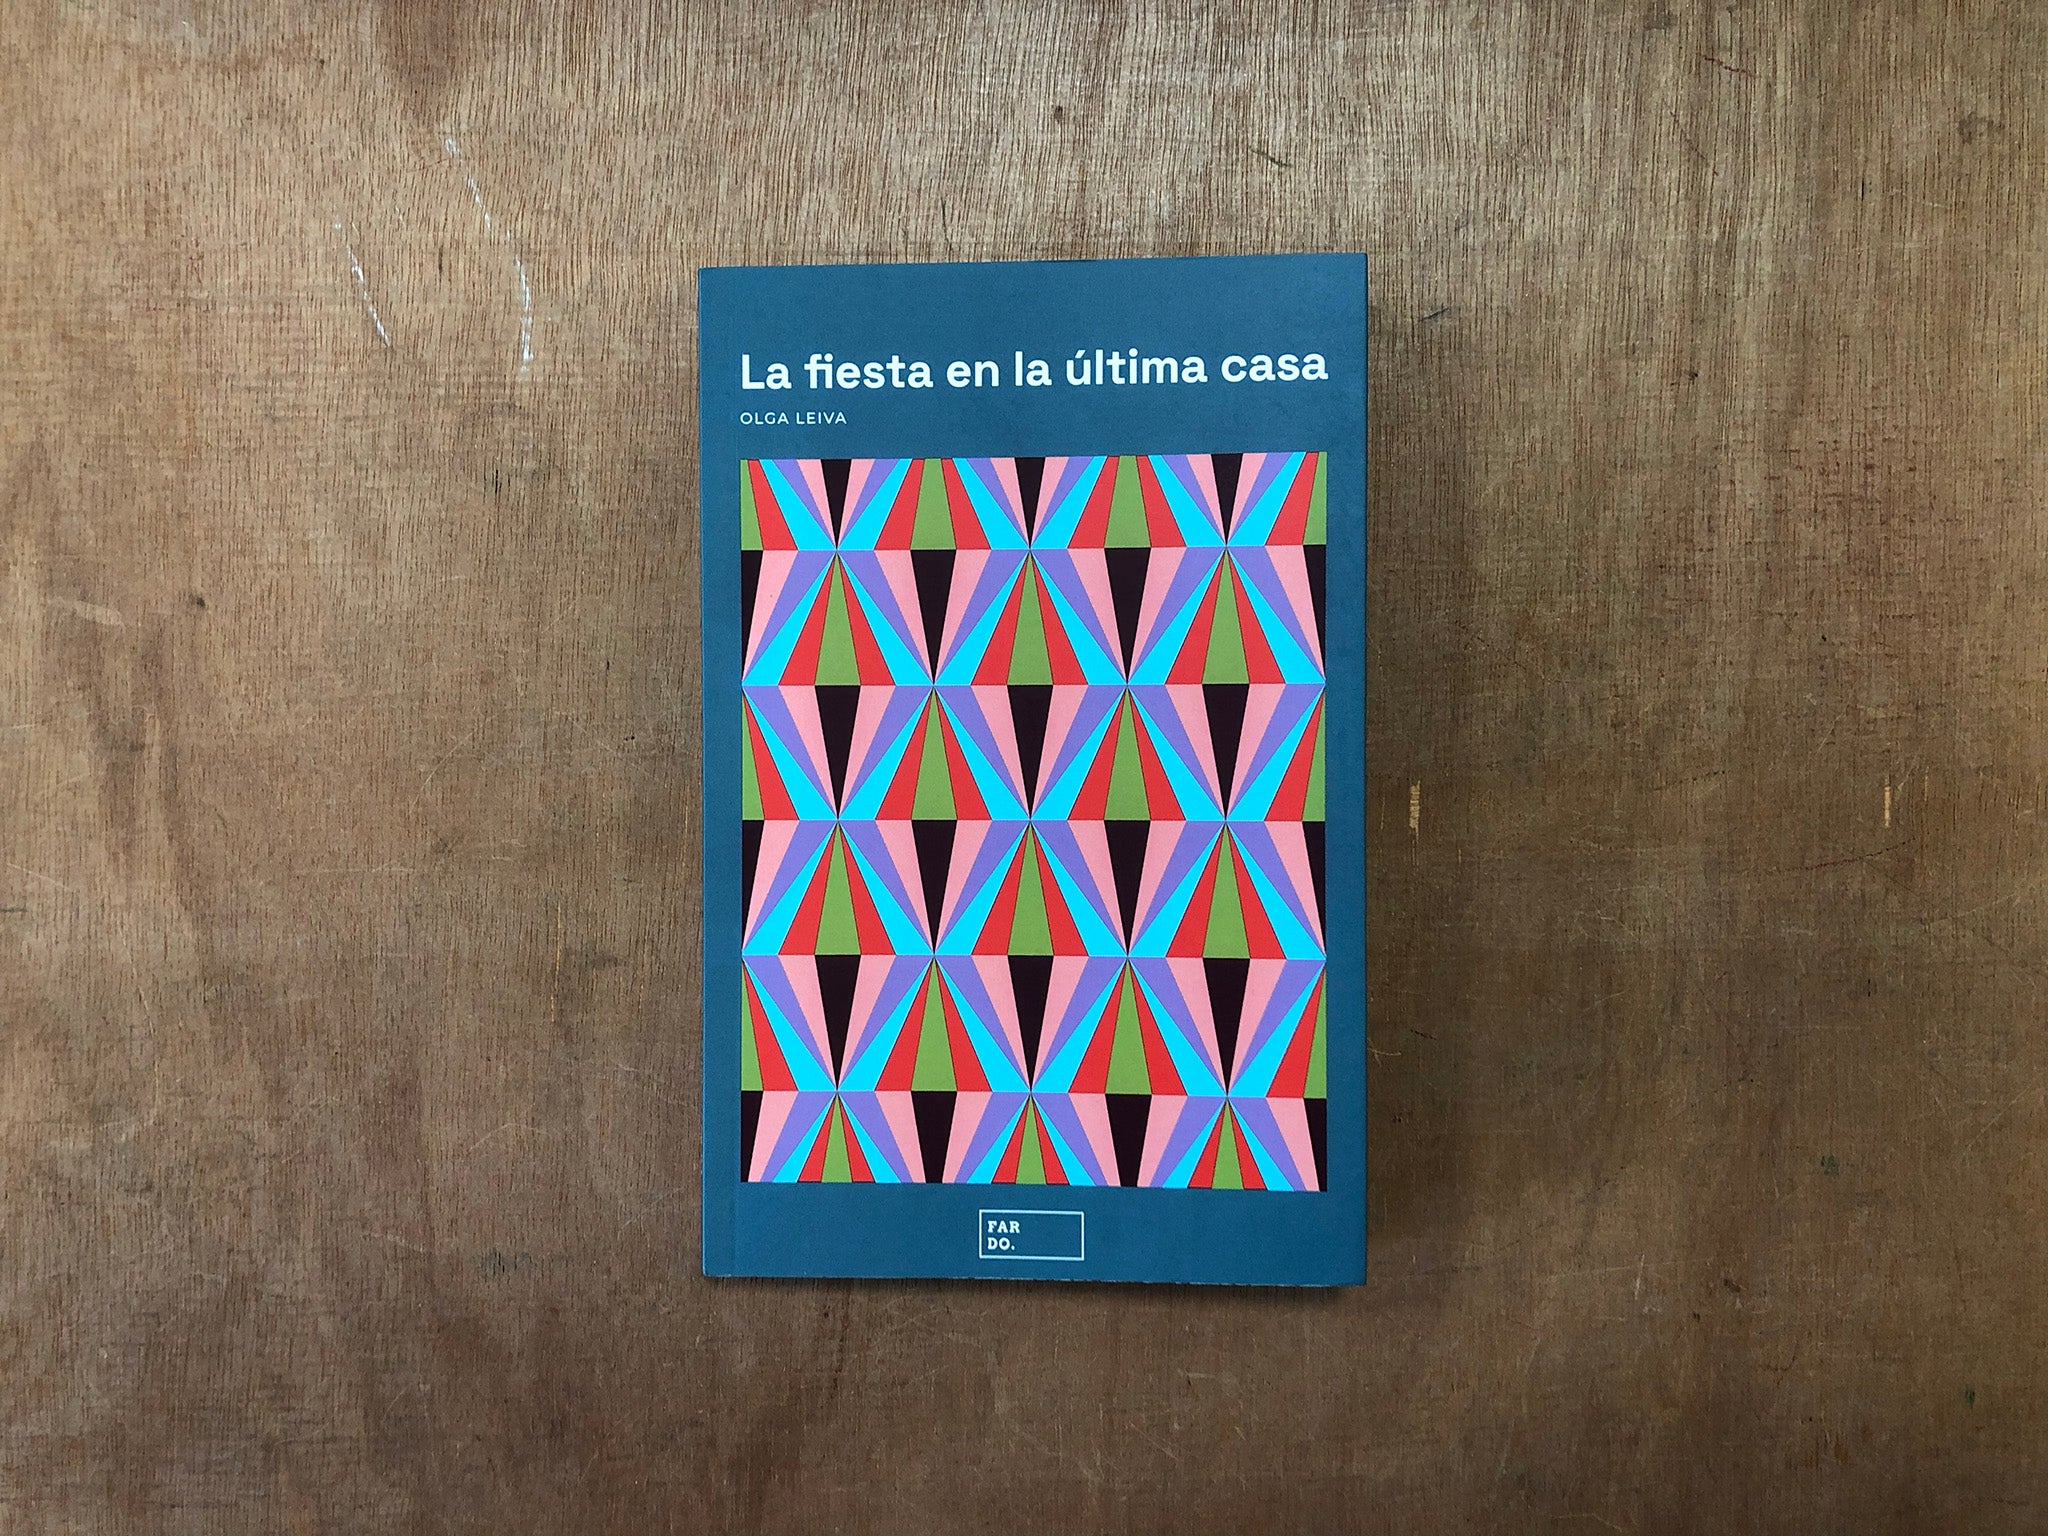 LA FIESTA EN LA ÚLTIMA CASA (THE PARTY IN THE LAST HOUSE) by Olga Leiva